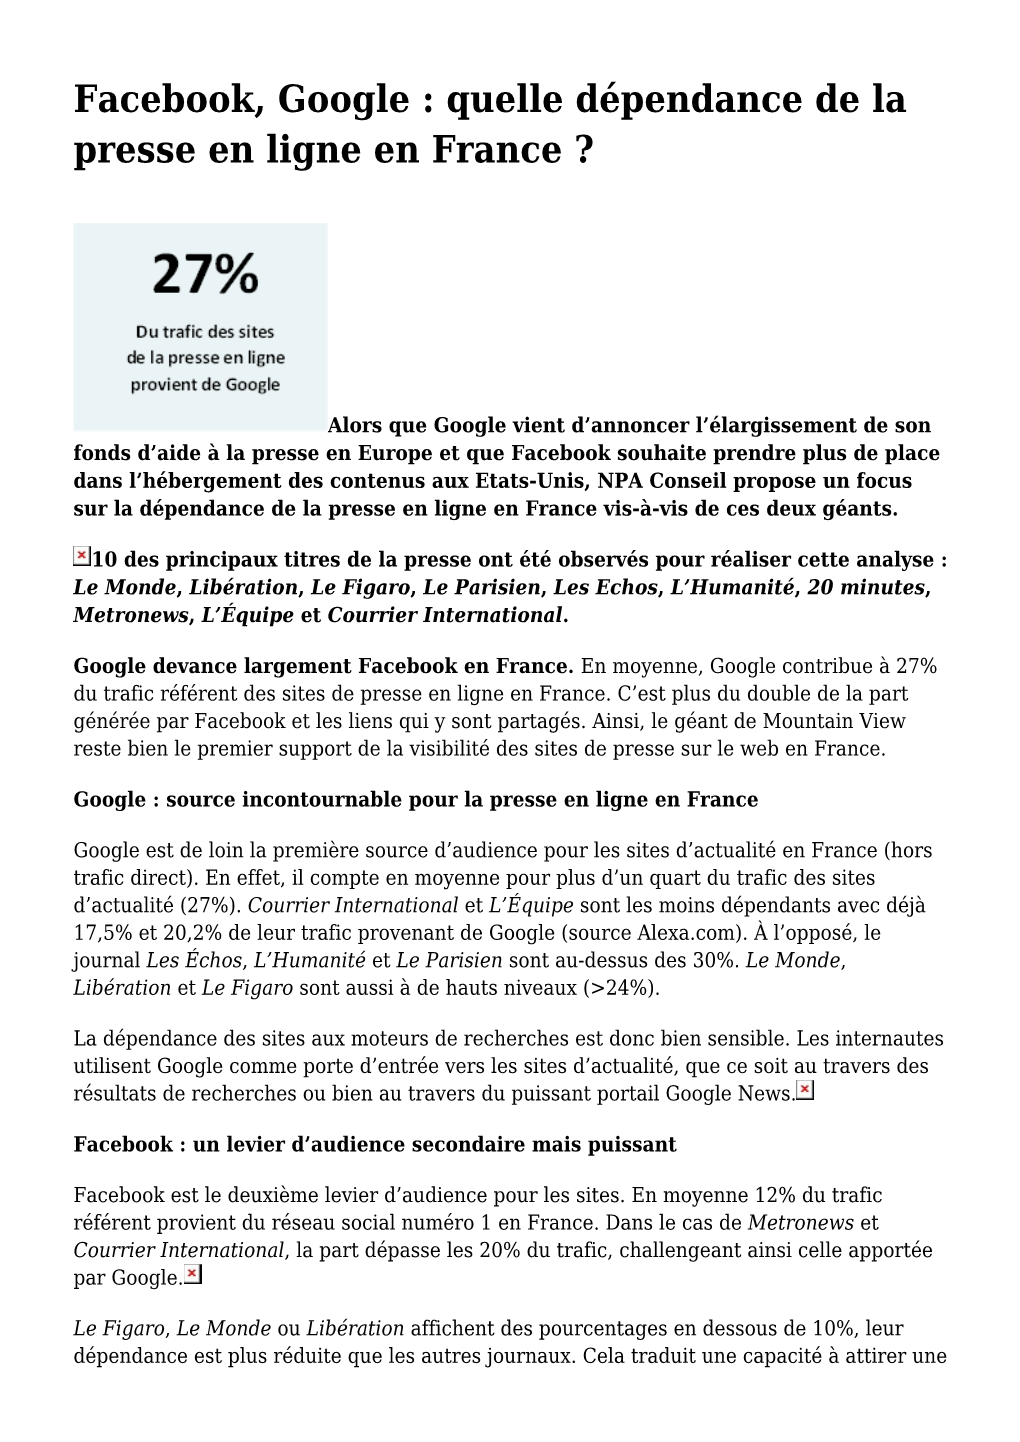 Facebook, Google : Quelle Dépendance De La Presse En Ligne En France ?